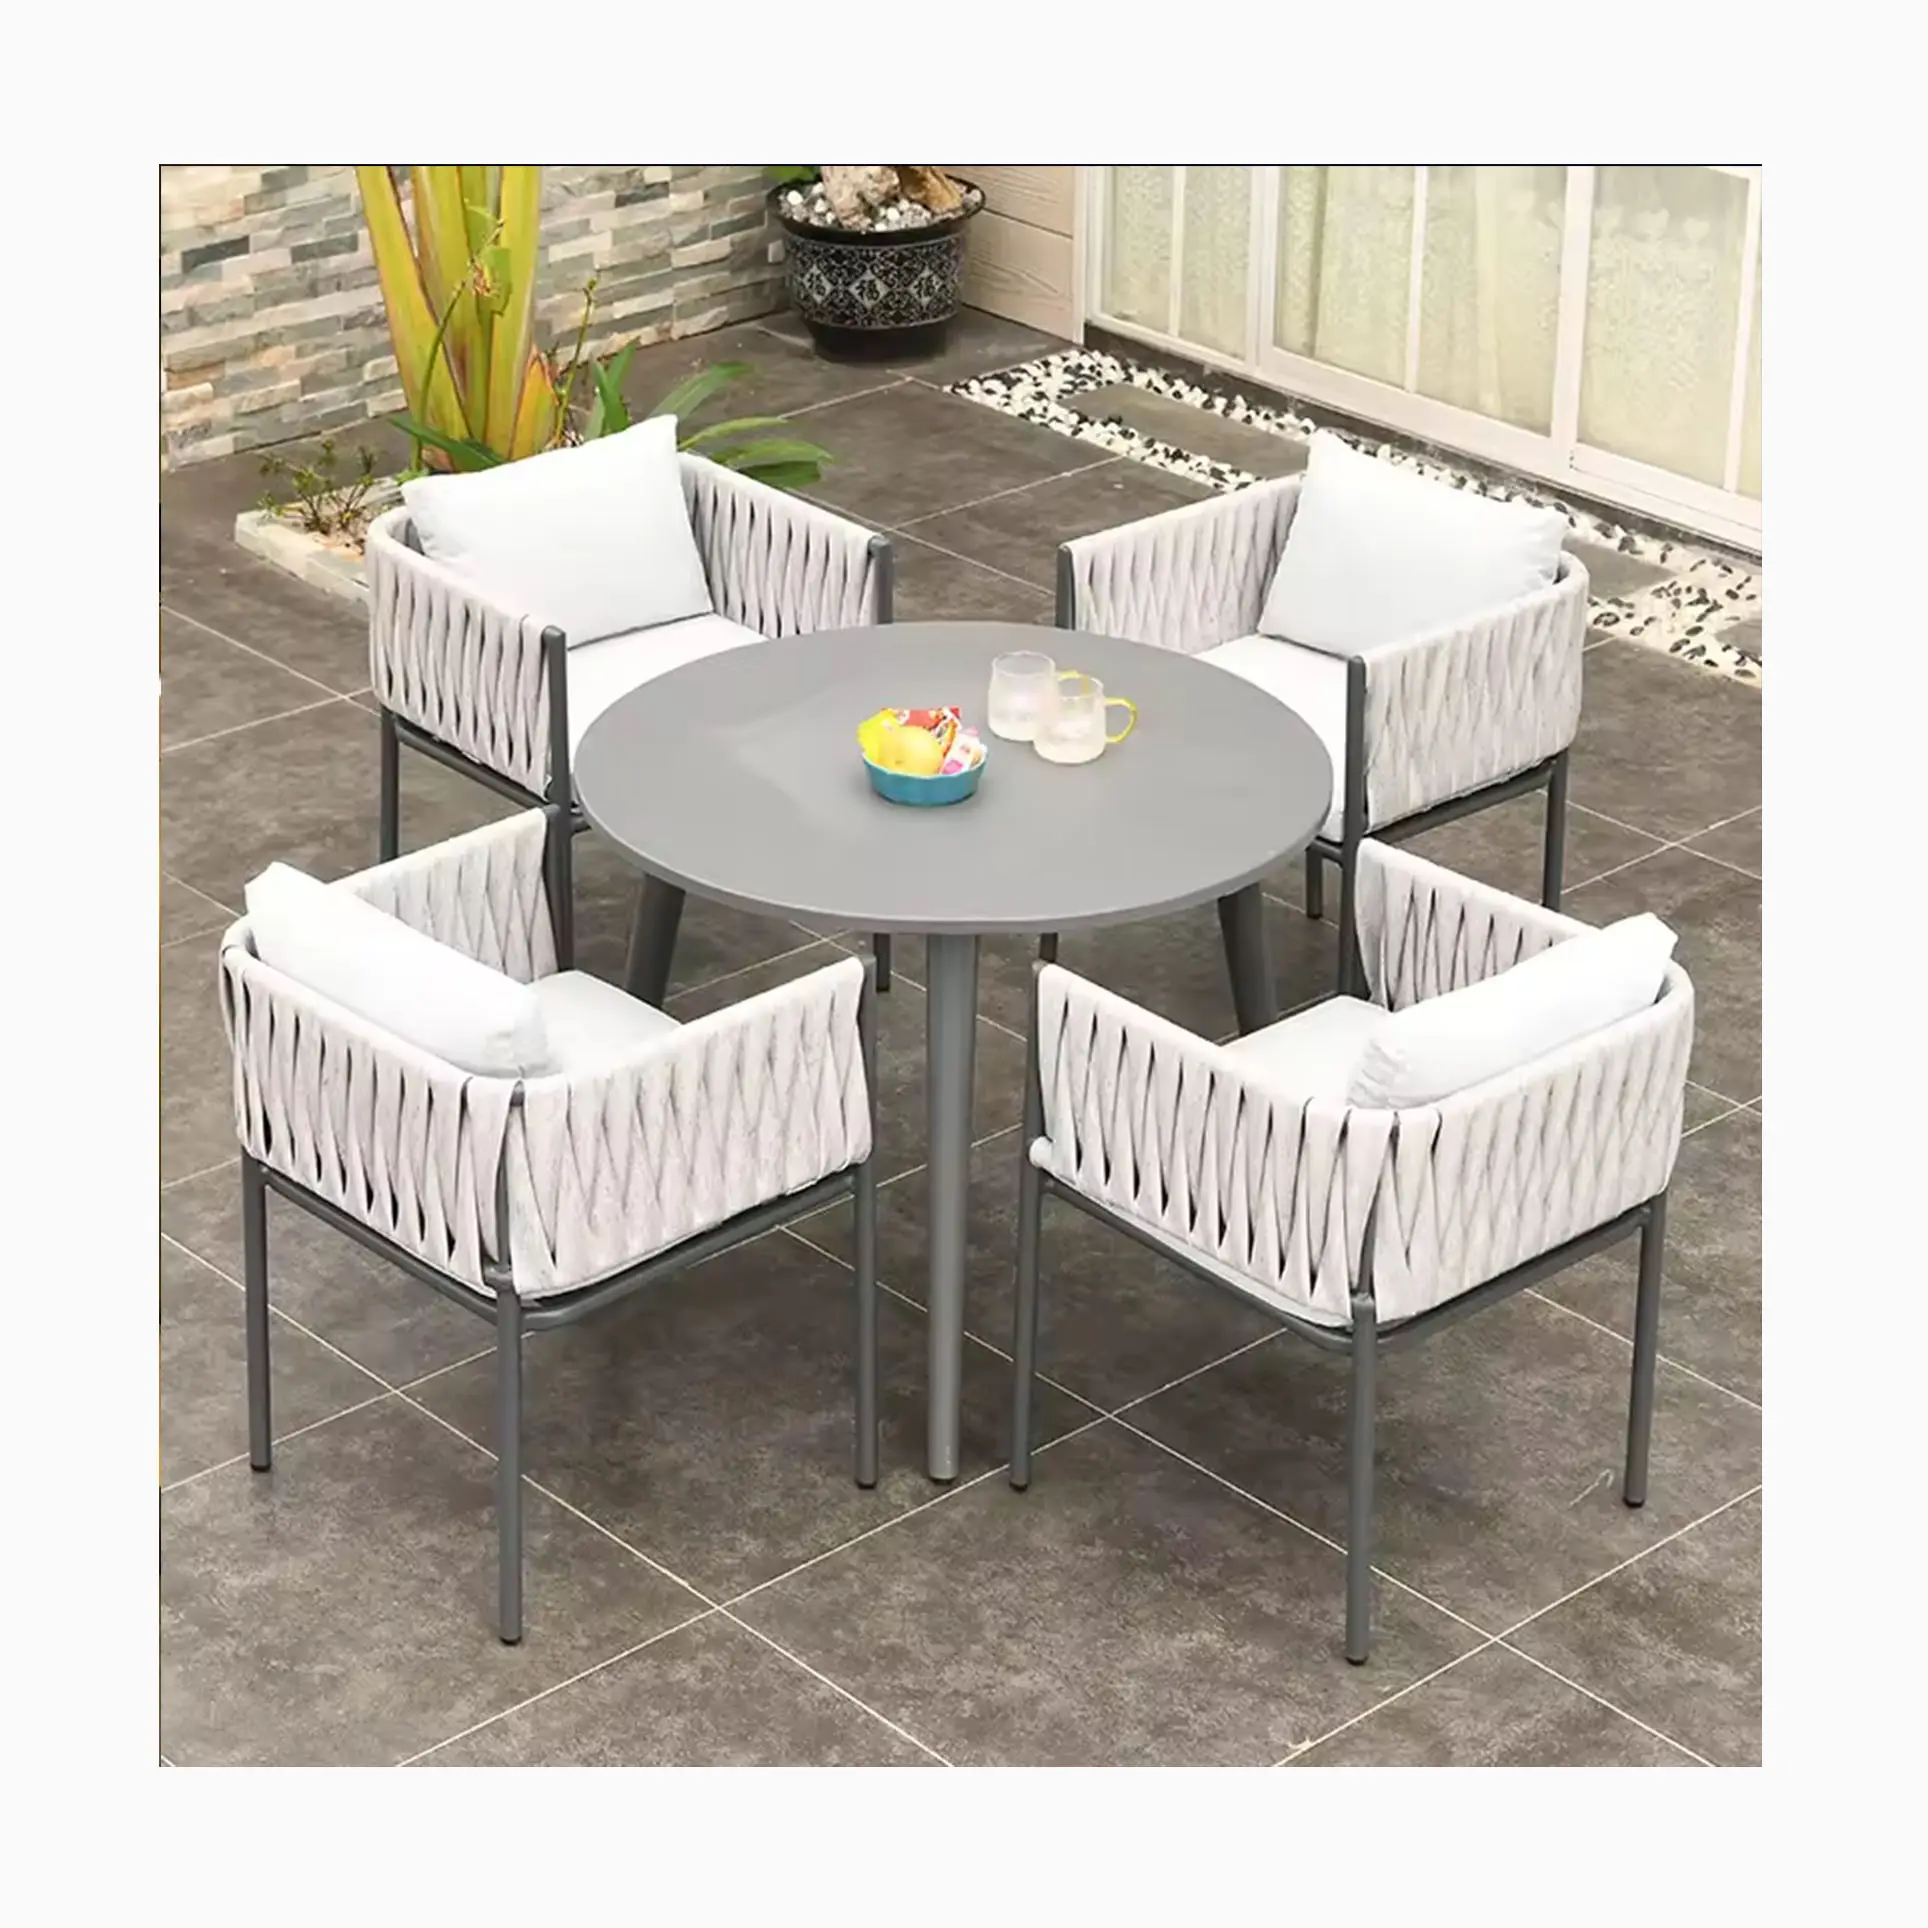 [HUAHONG] meubles d'extérieur de style moderne européen de luxe jardin patio chaise en métal ensembles de table et de chaises en rotin